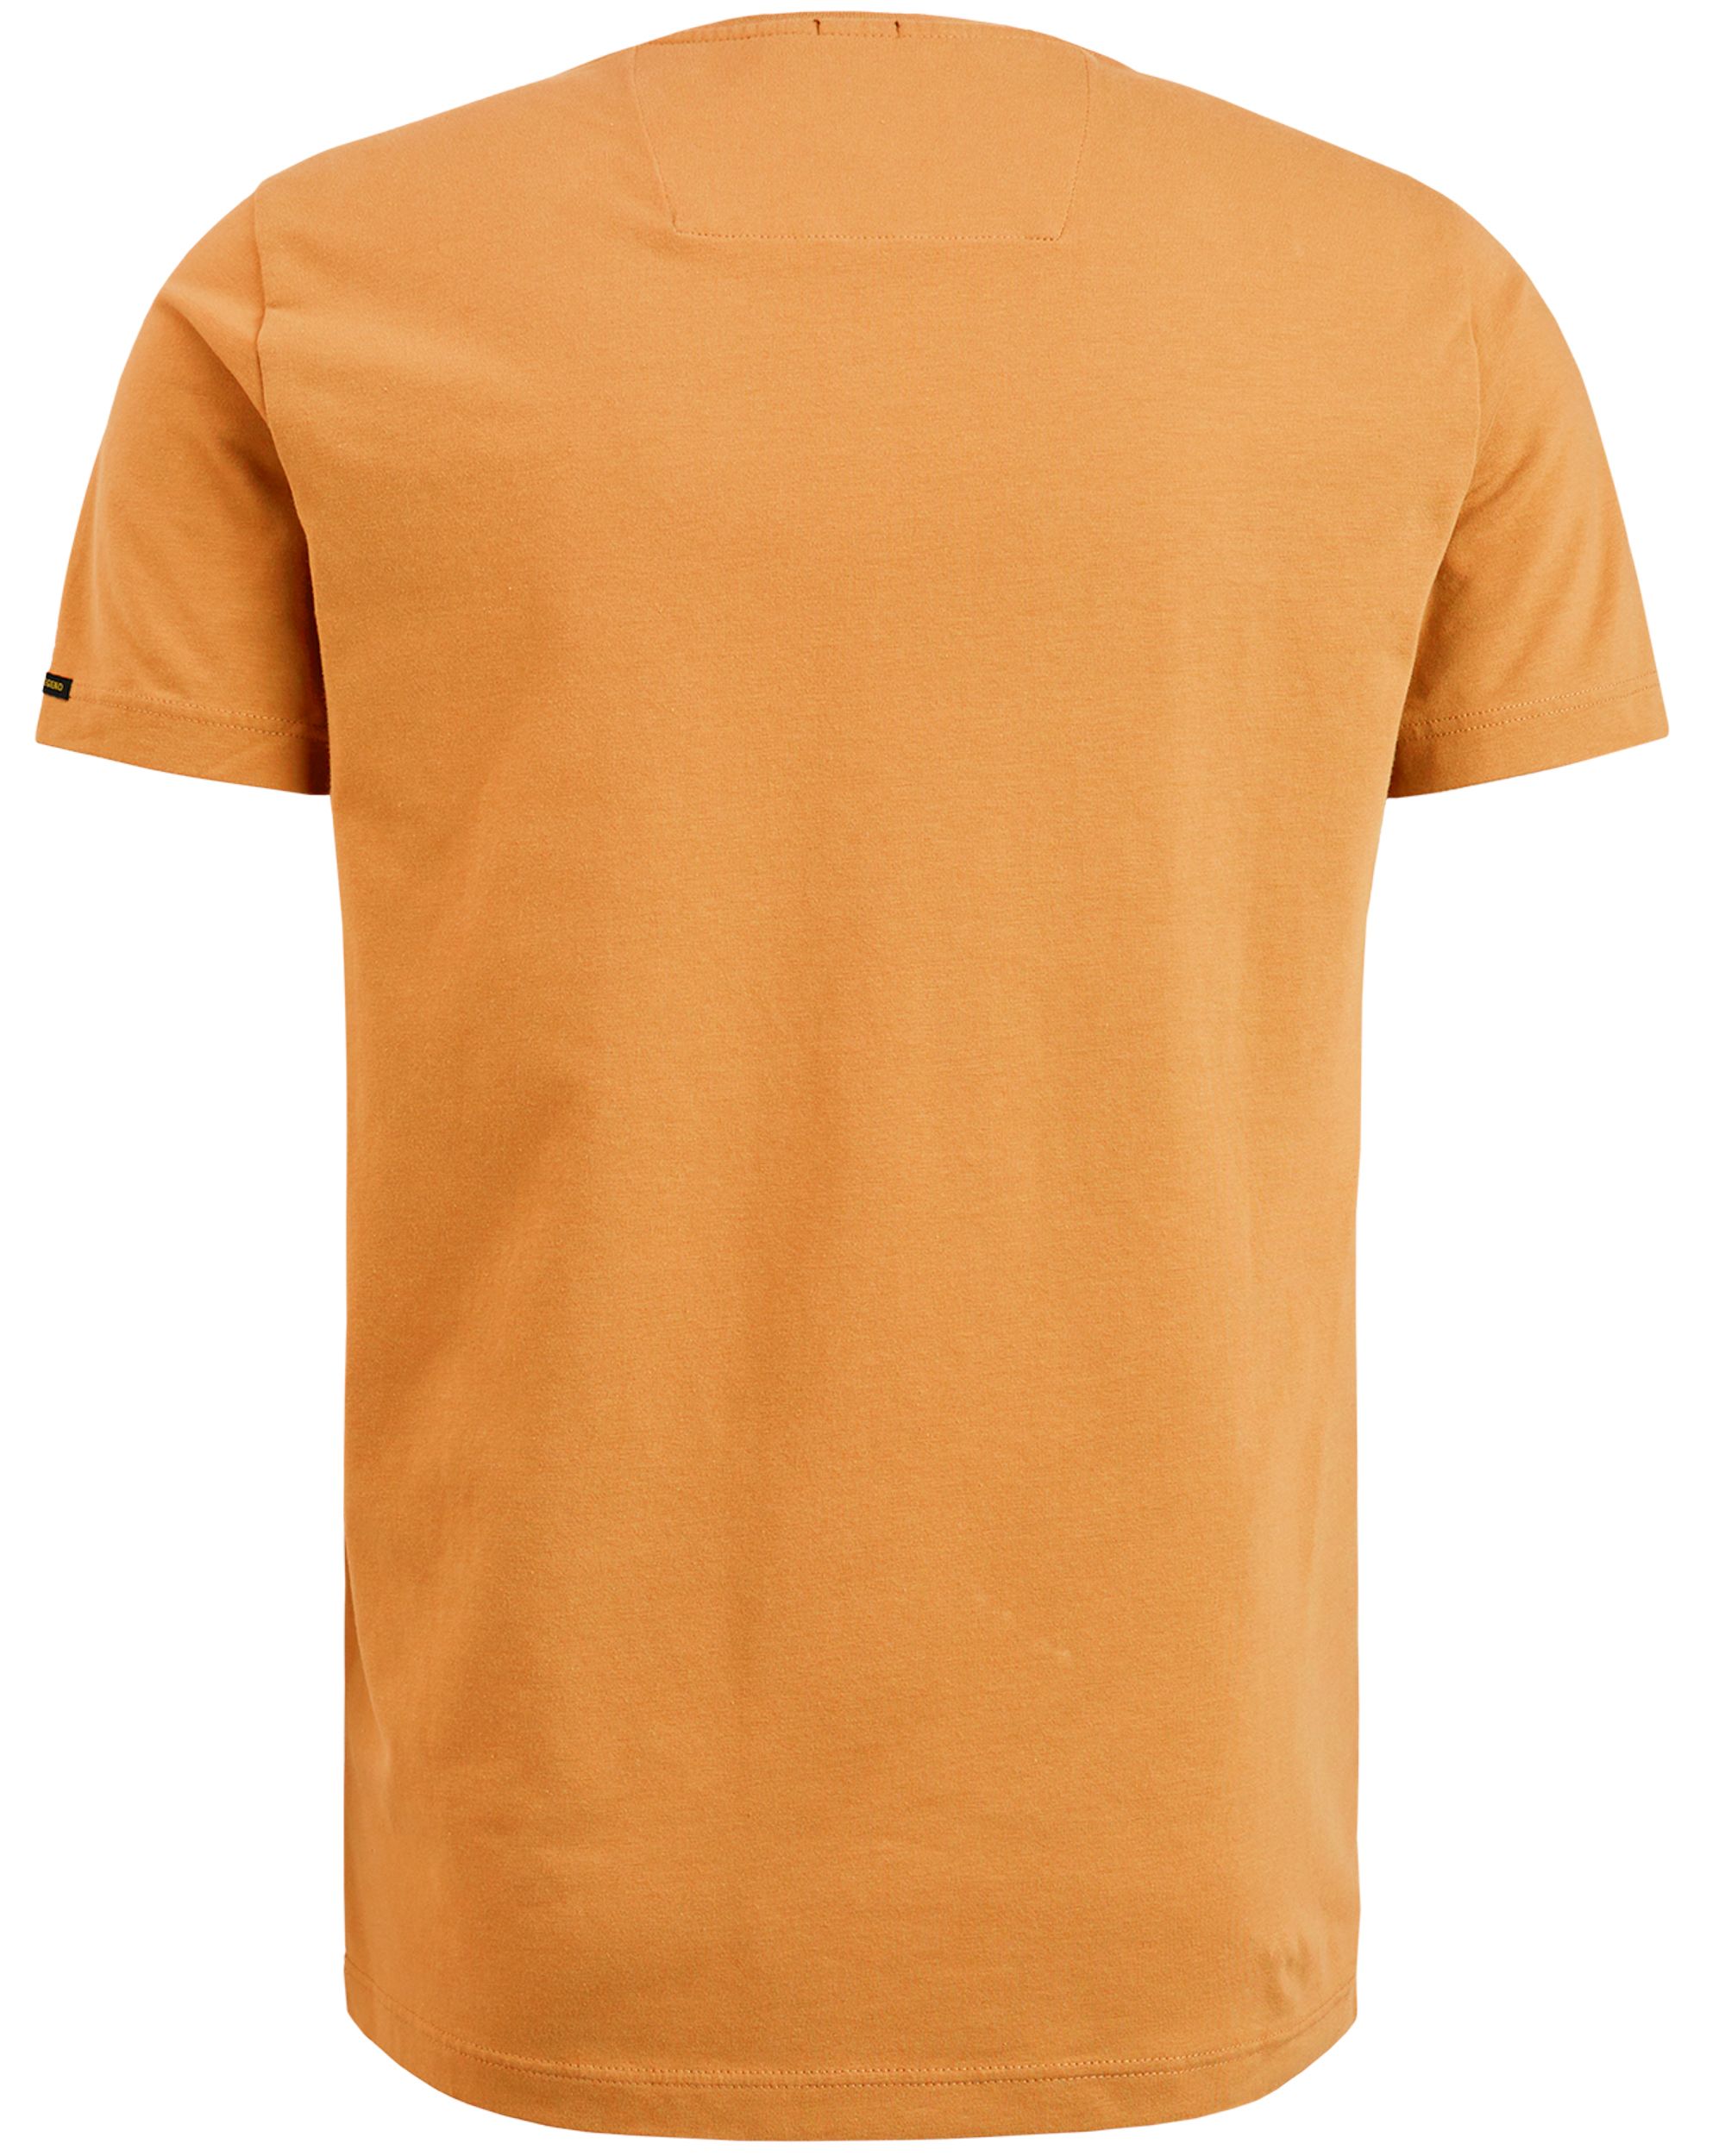 PME Legend T-shirt KM Oranje 085520-001-L